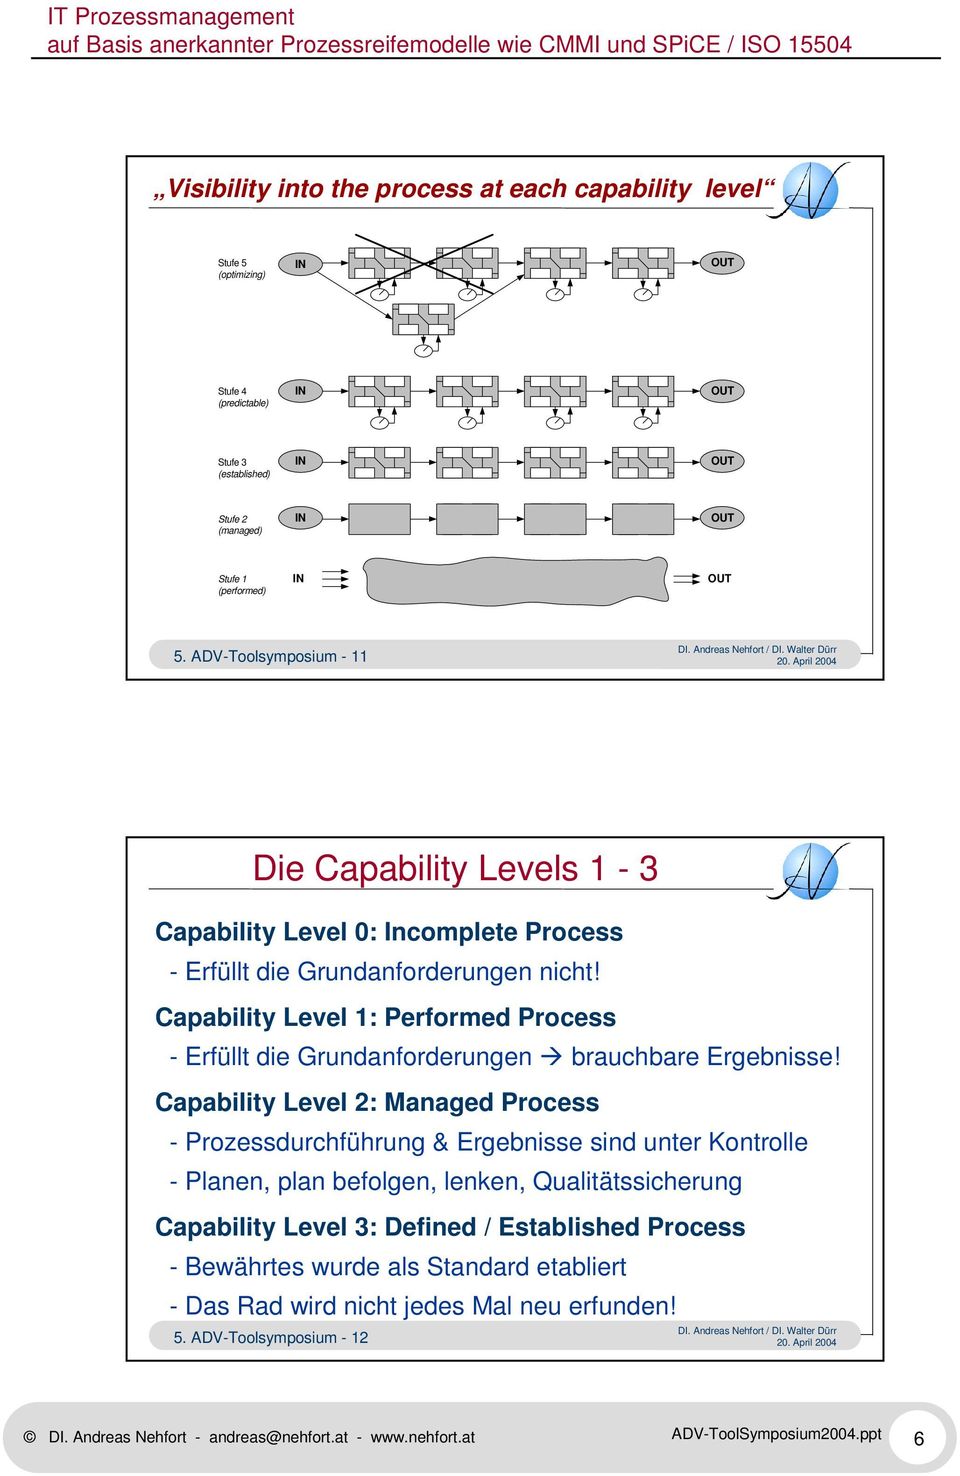 Capability Level 1: Performed Process - Erfüllt die Grundanforderungen brauchbare Ergebnisse!